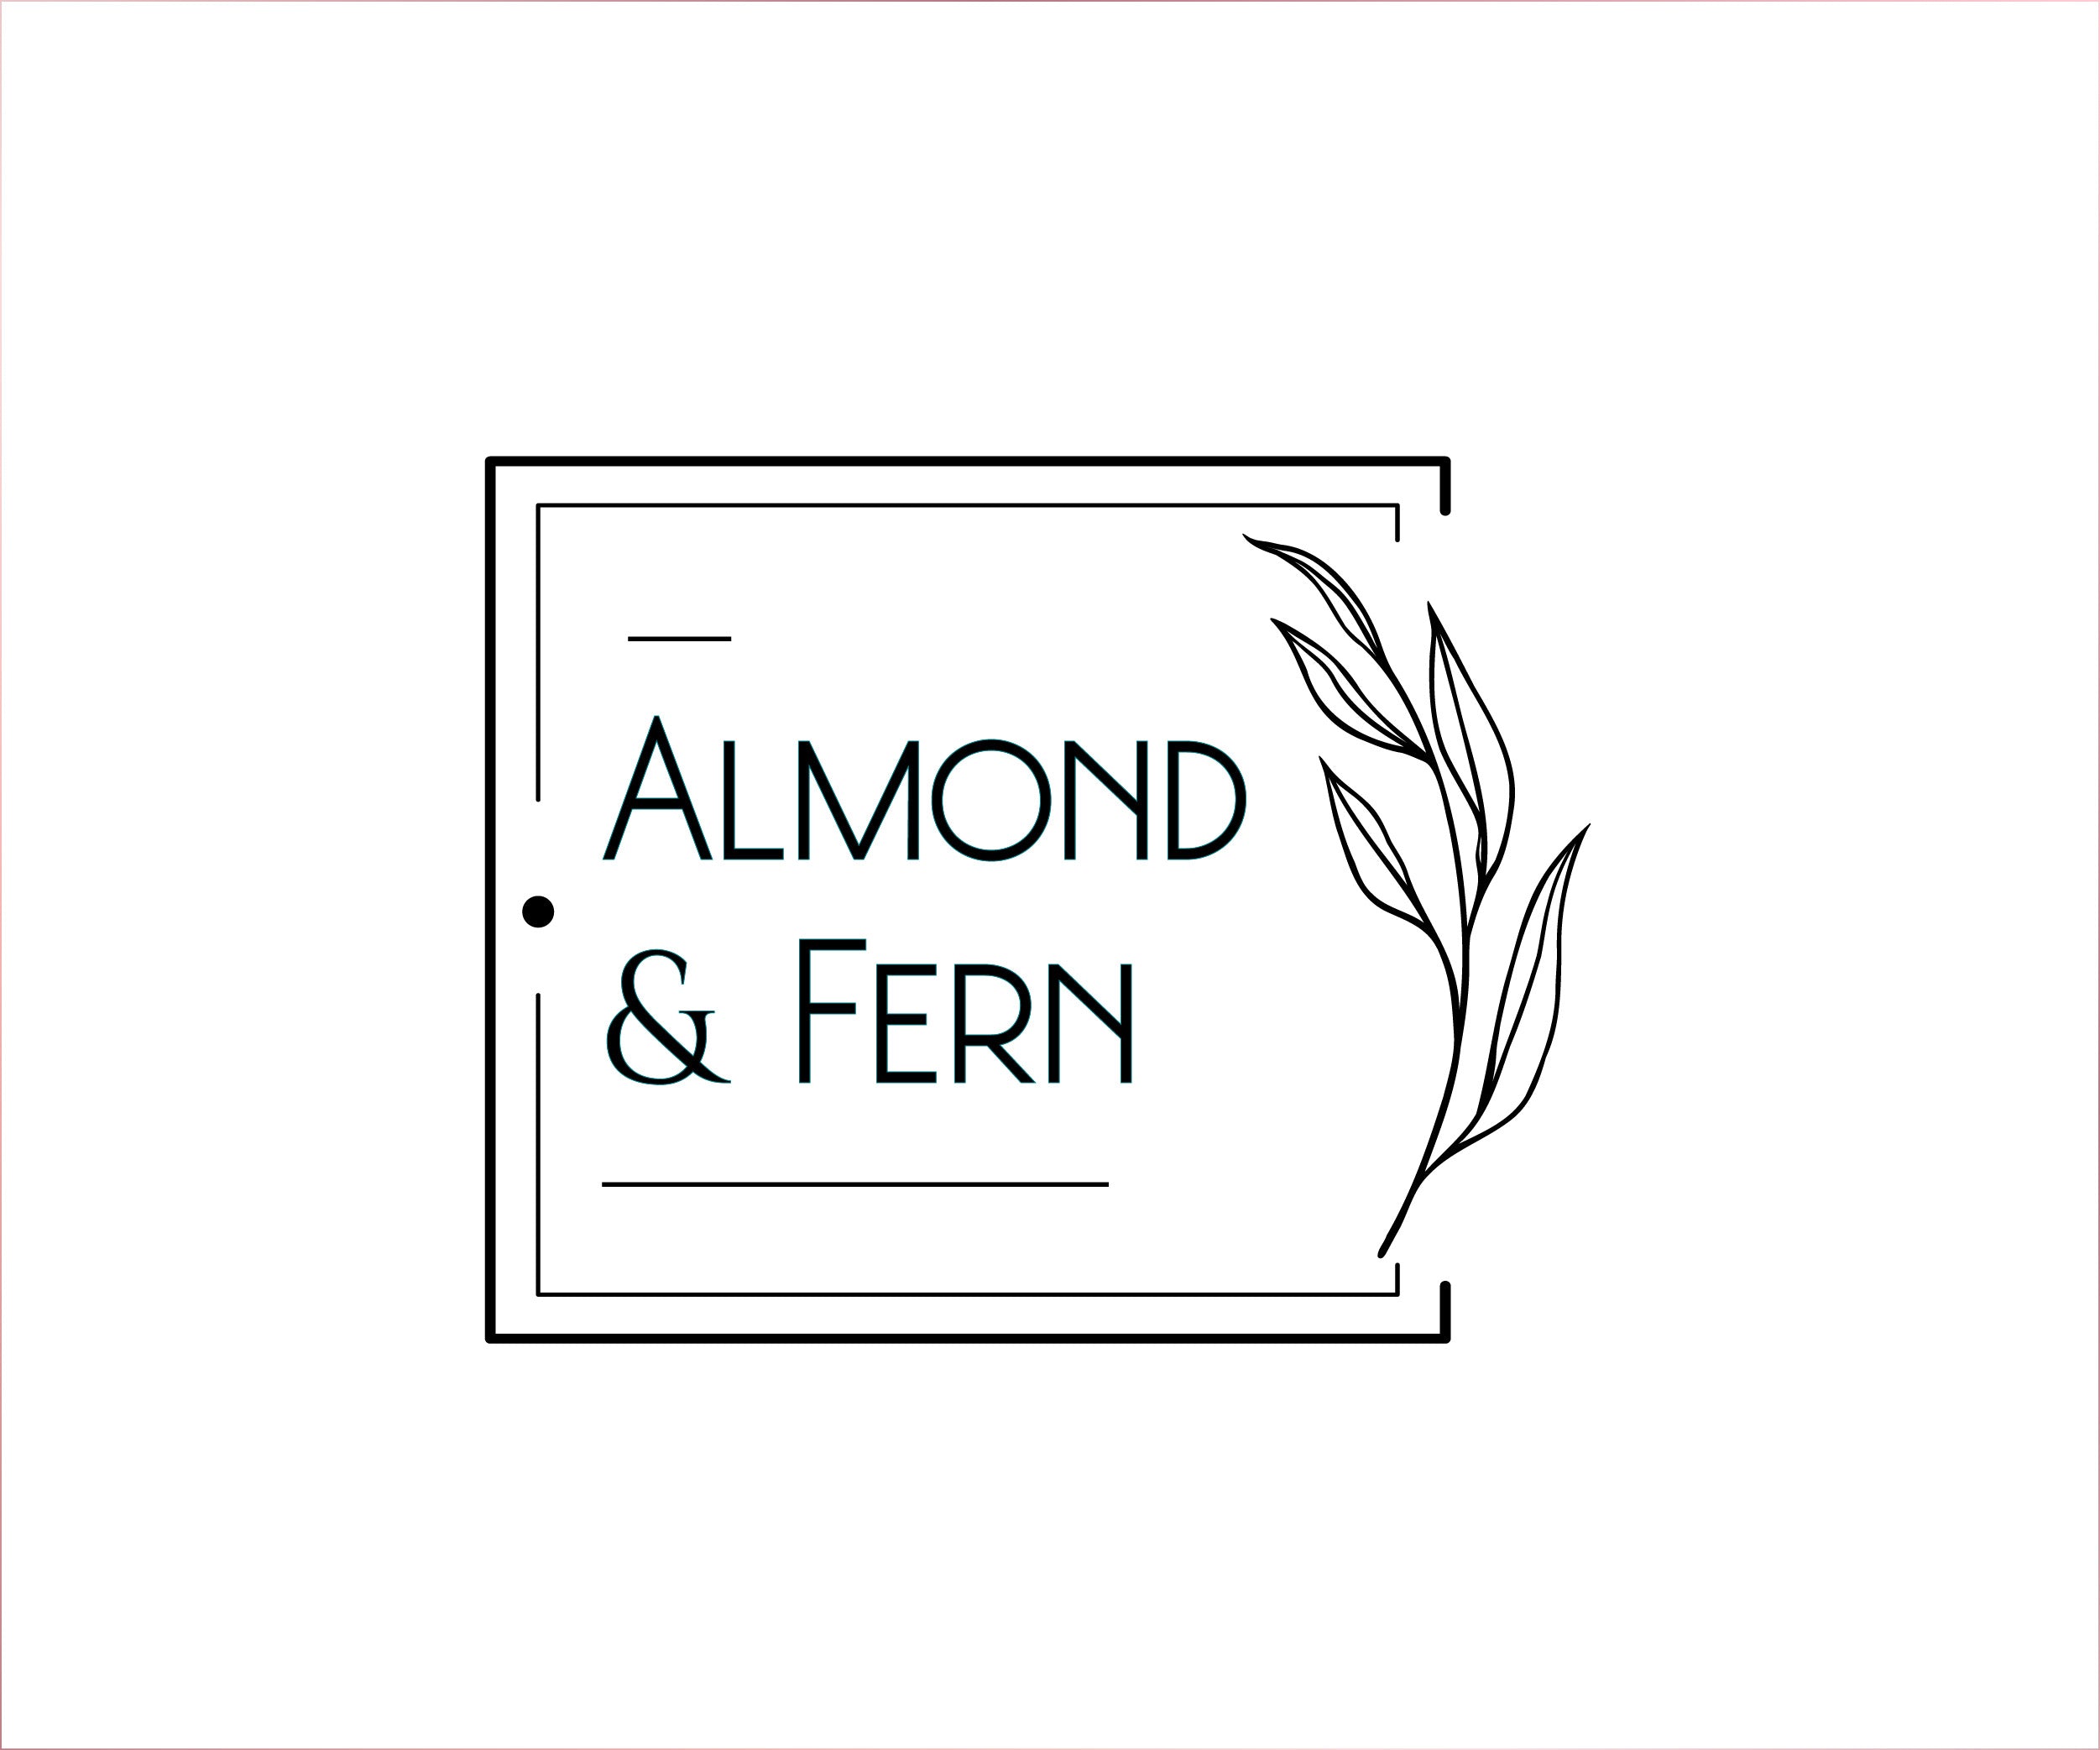 Almond & Fern